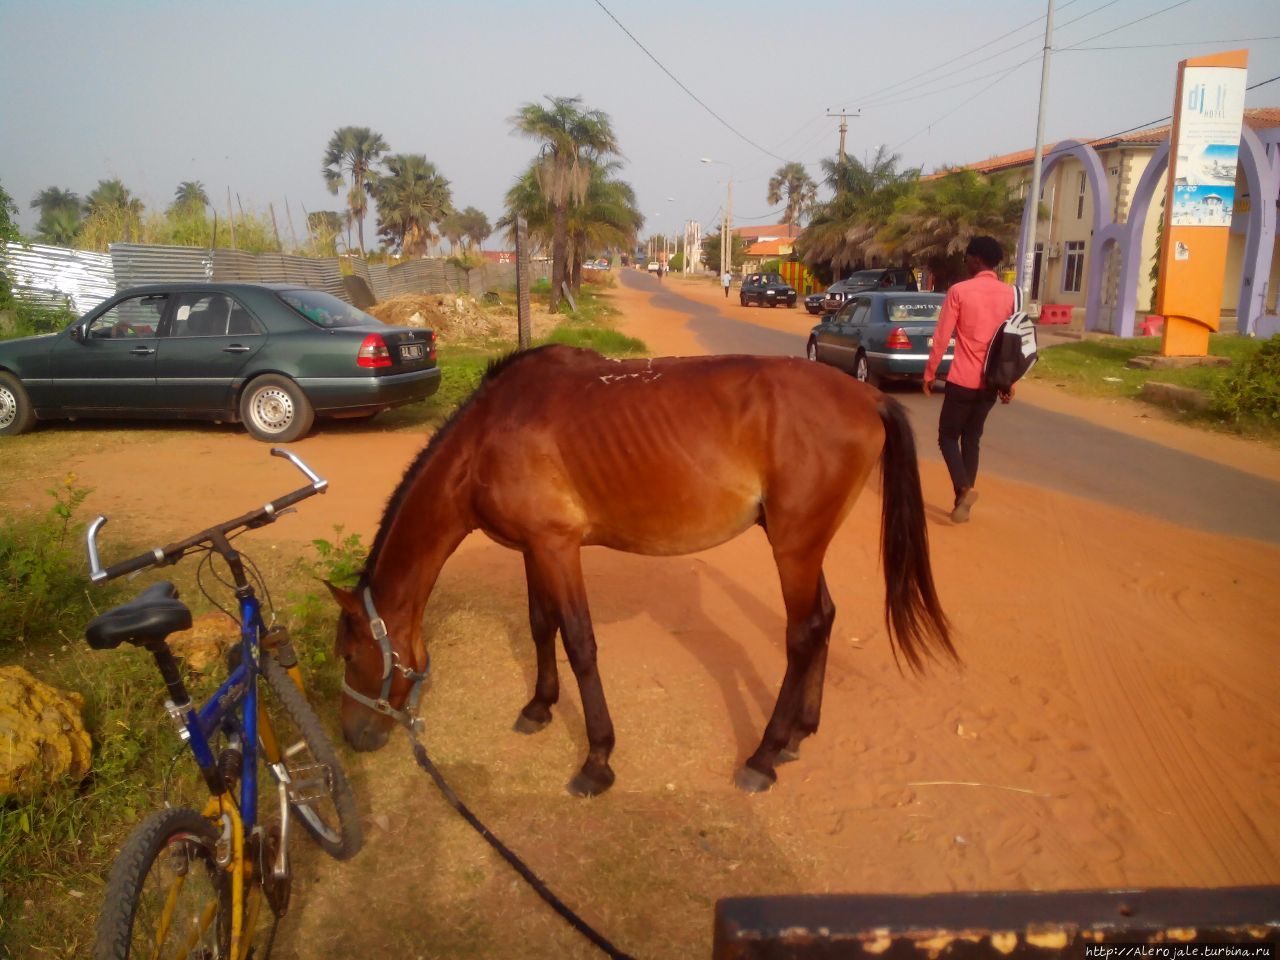 Бамбоо Гарден Кололи, Гамбия